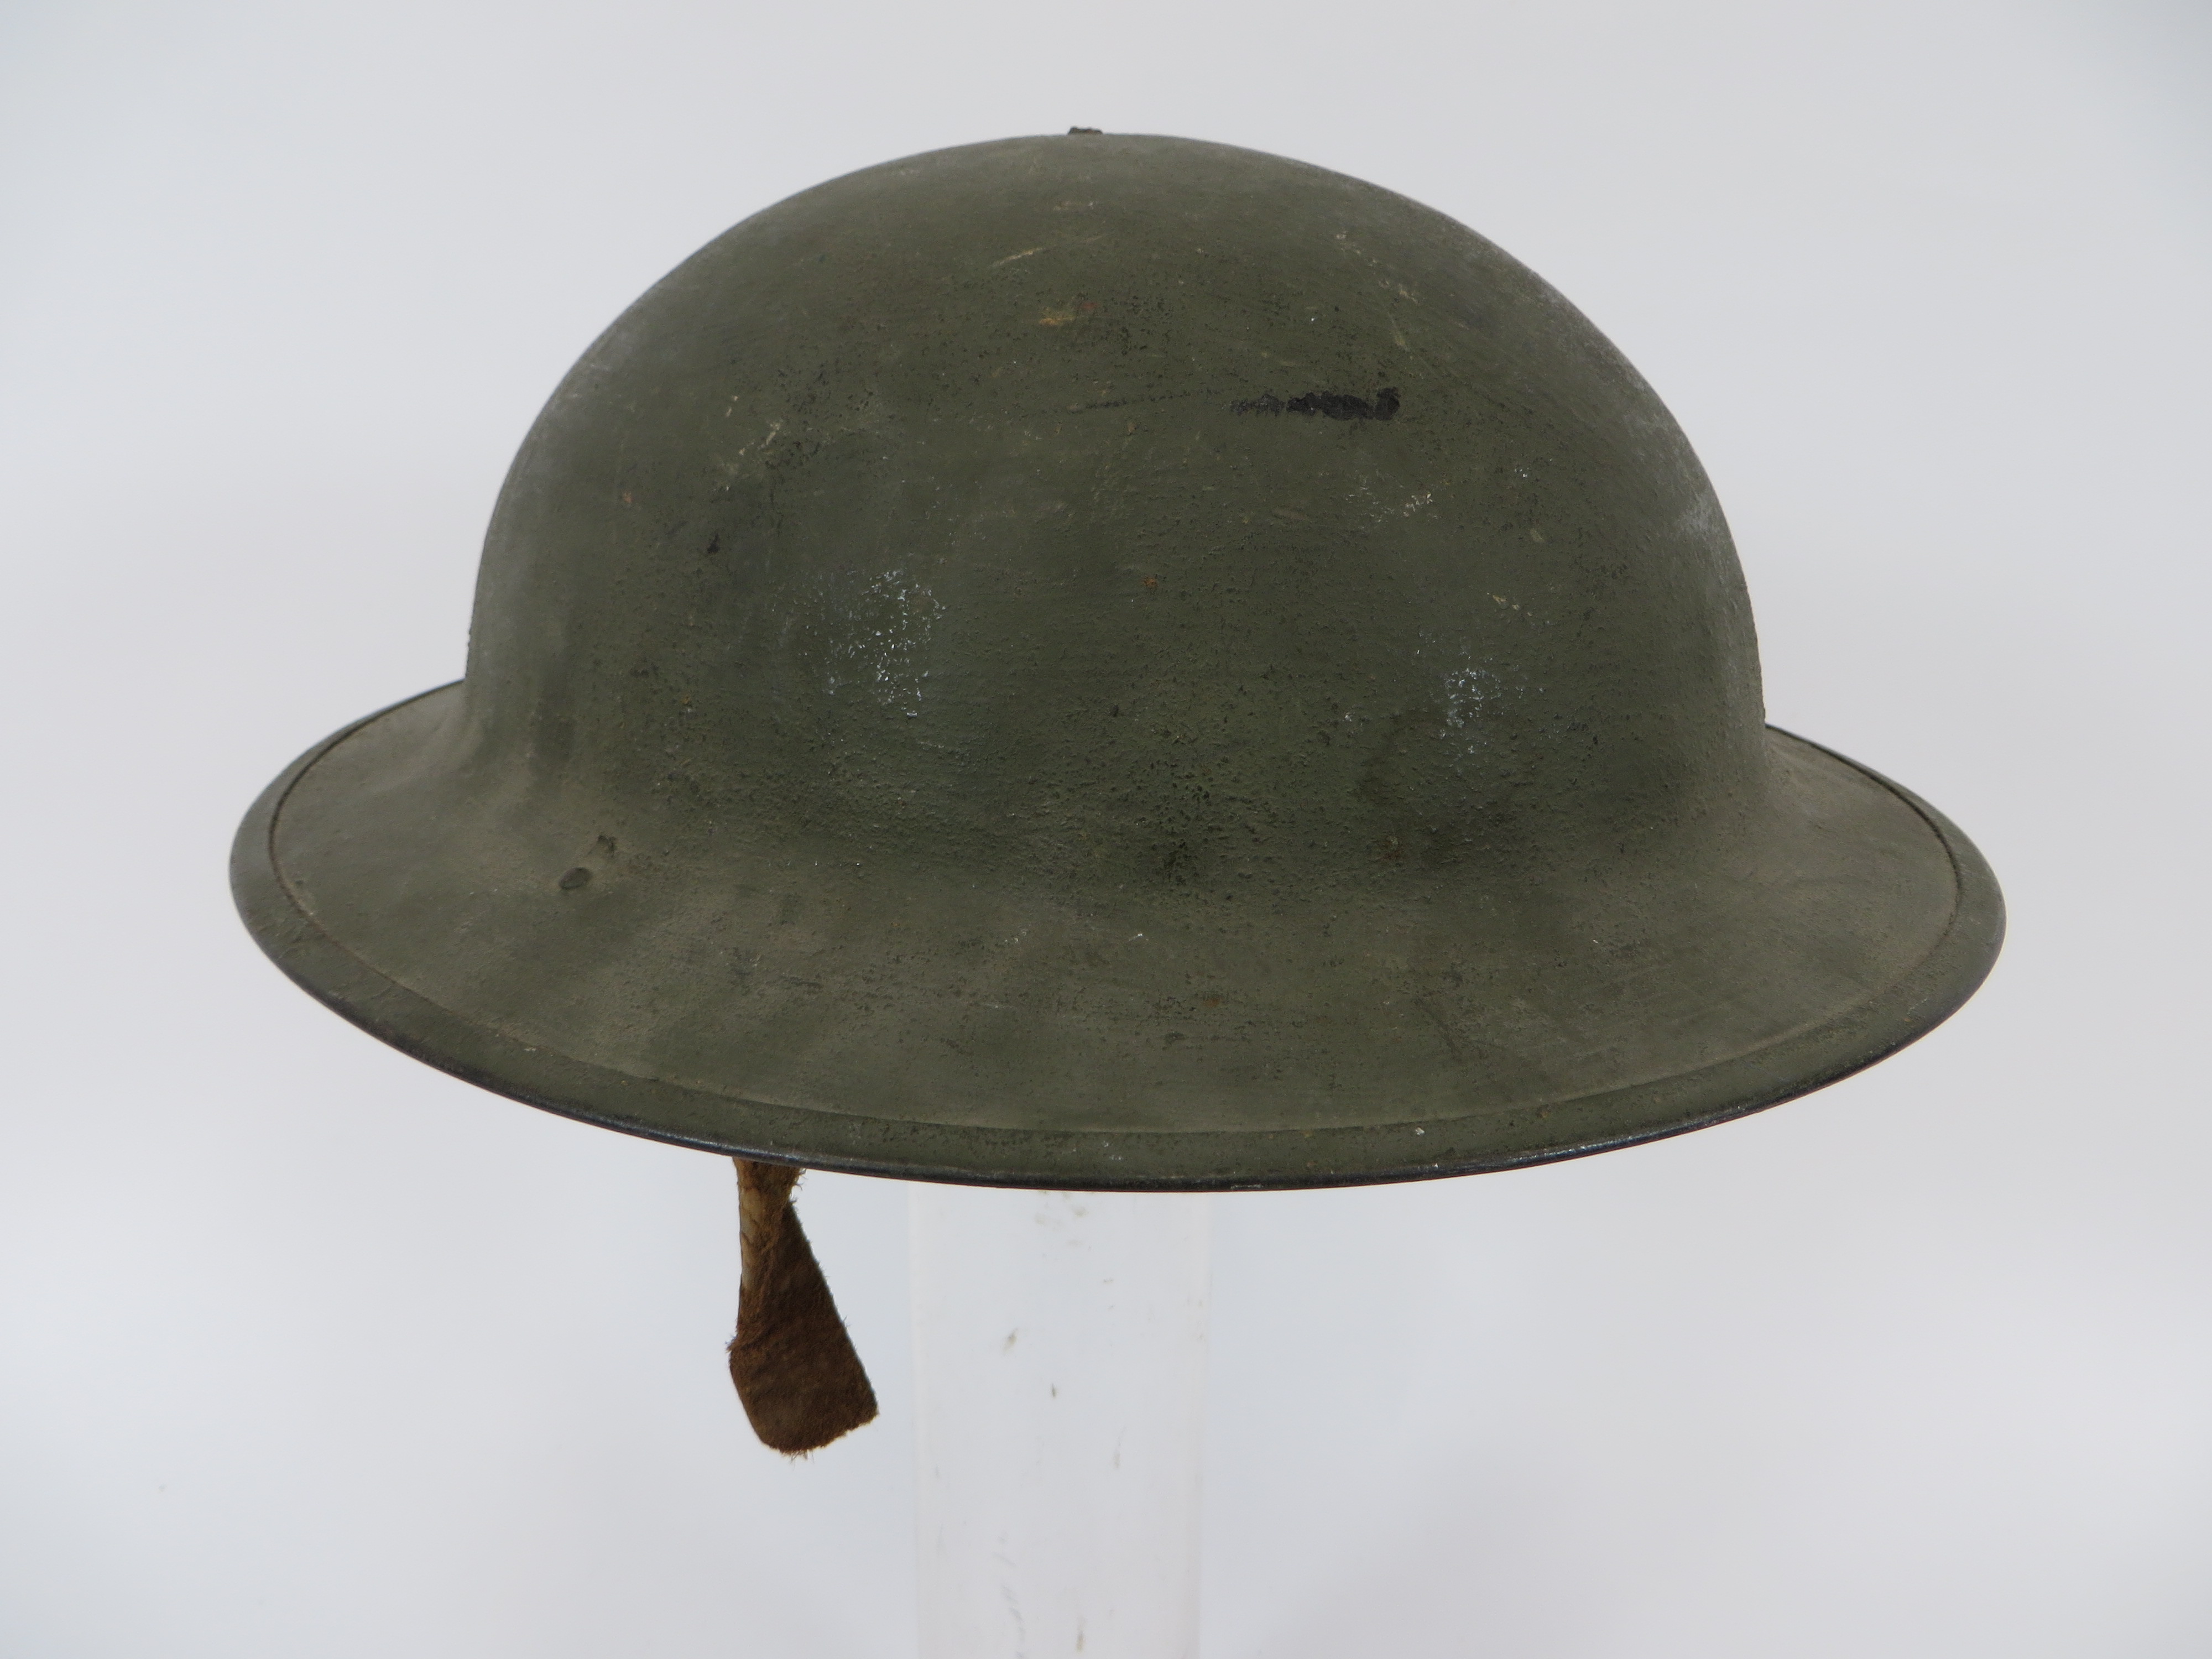 WW1 American Pattern Brodie Steel Helmet green painted exterior low crown helmet. Turned edge